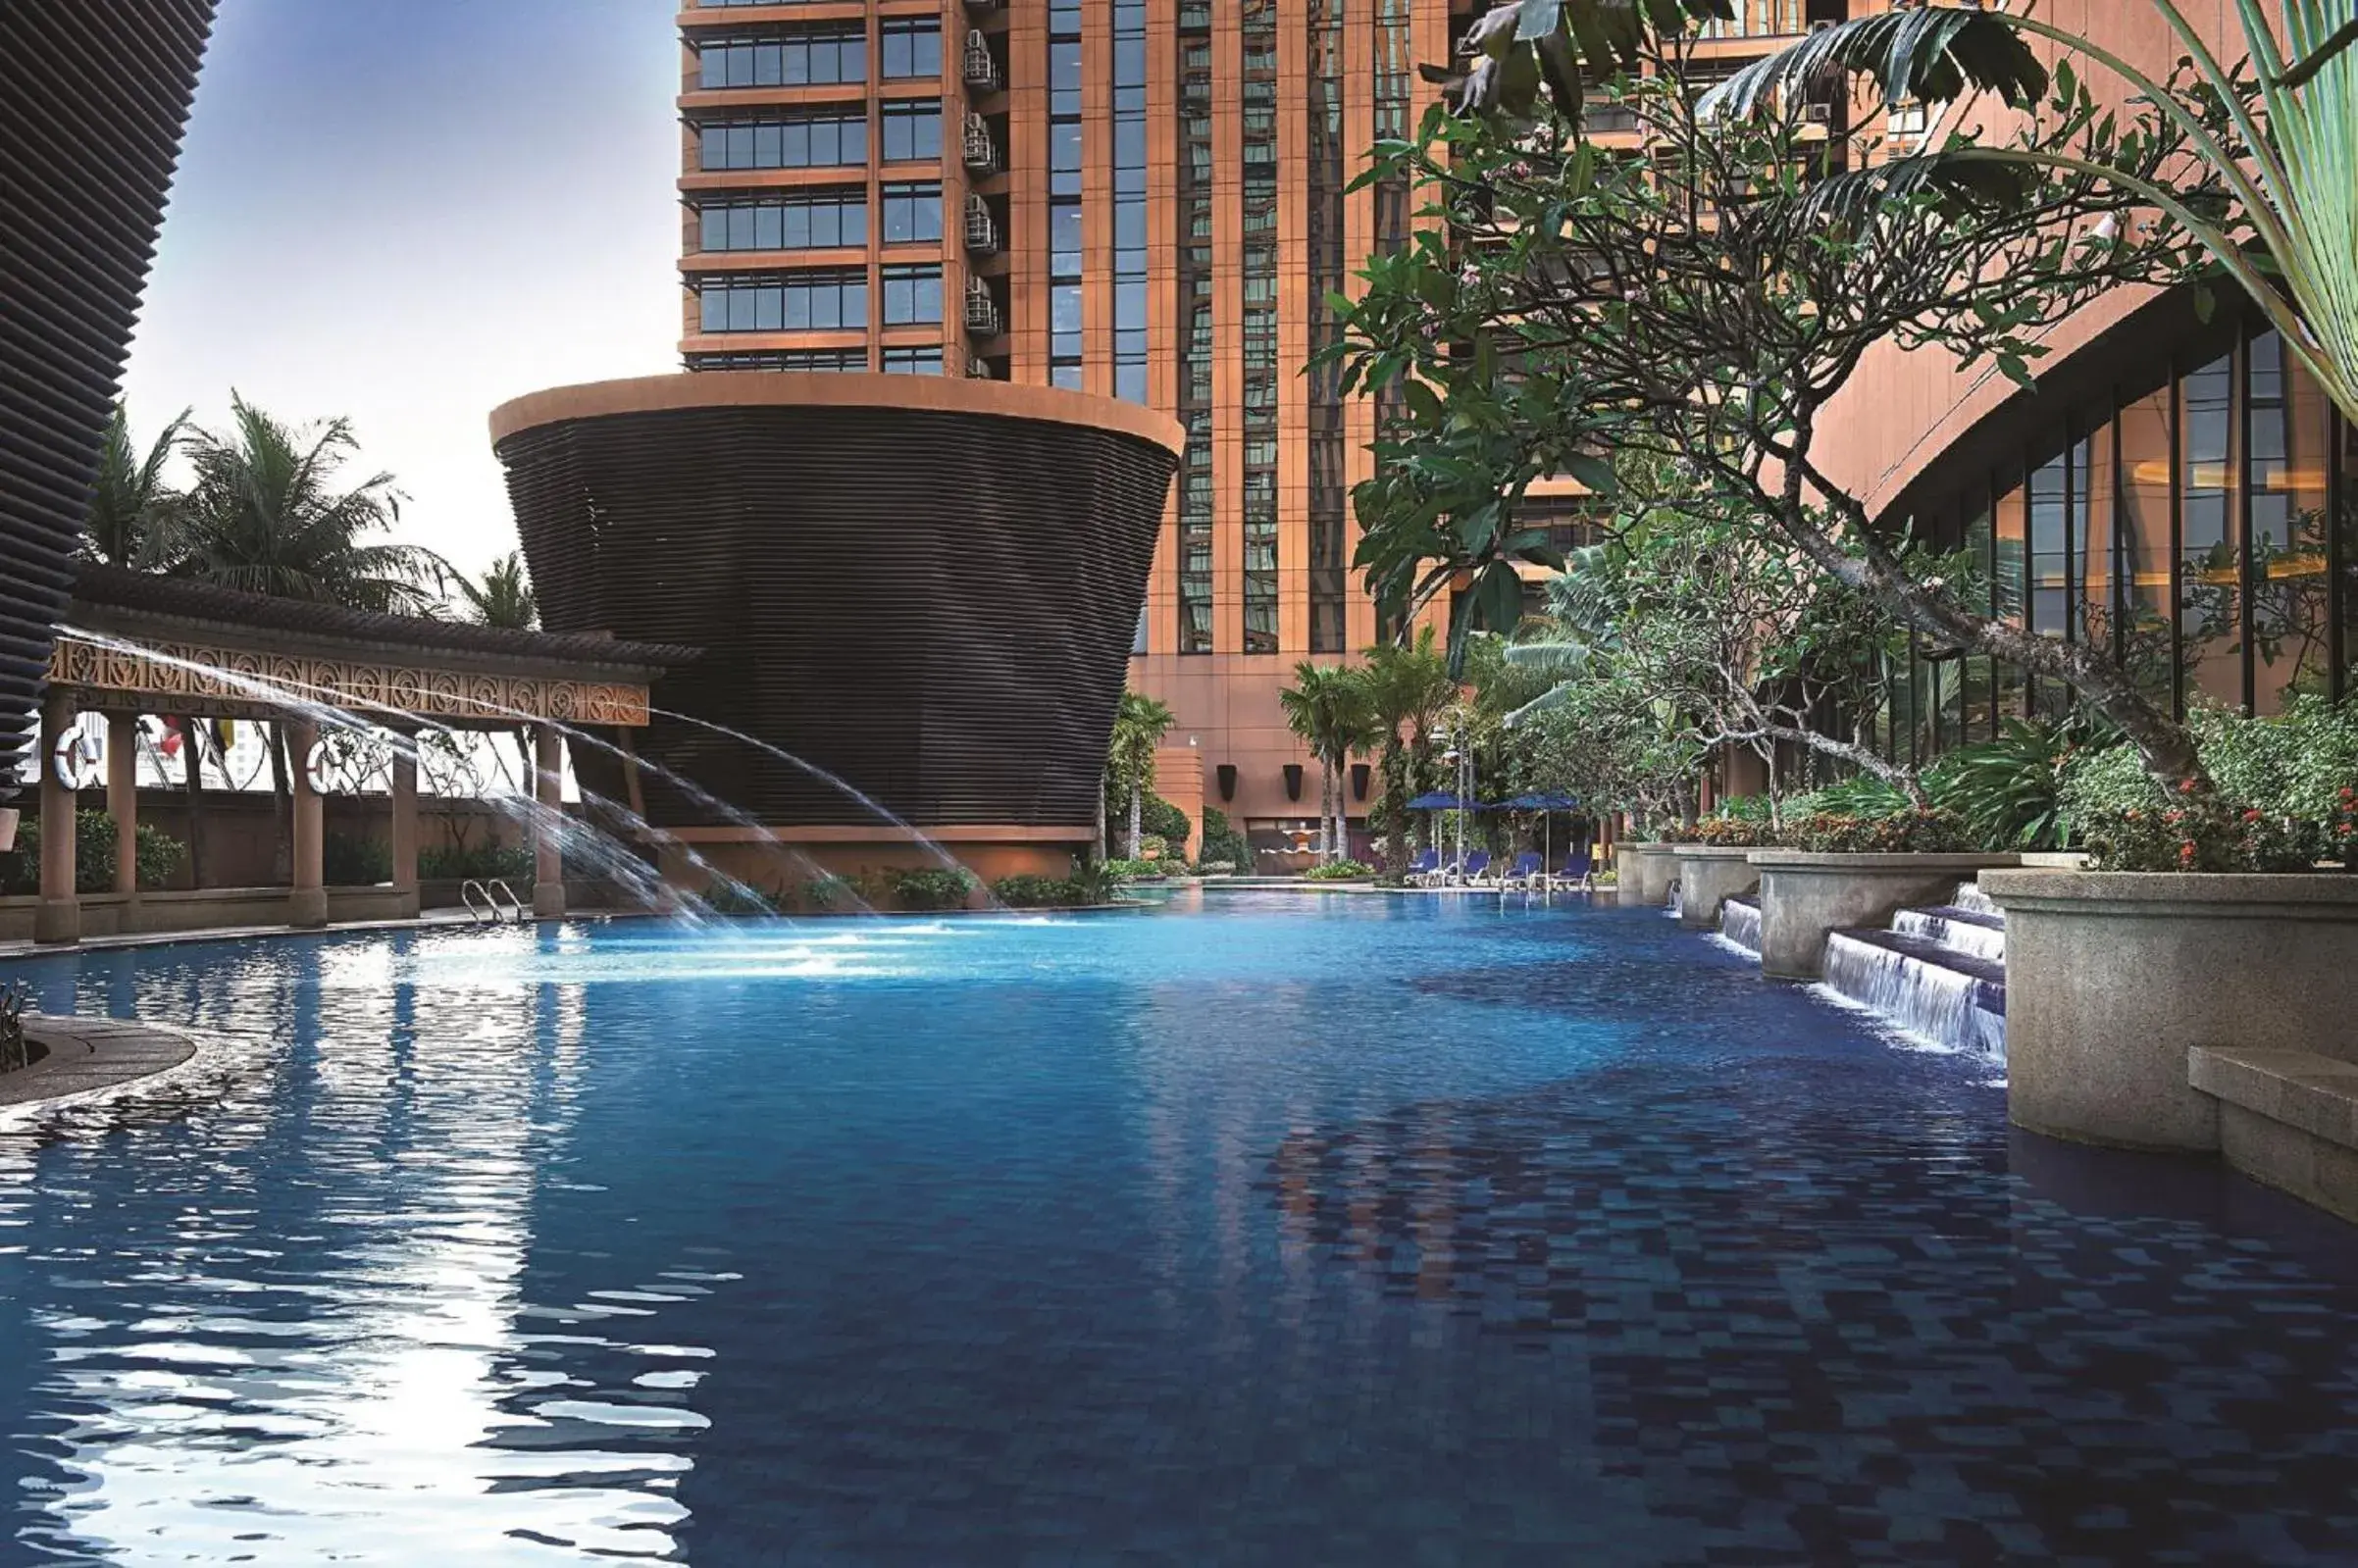 Swimming pool in Berjaya Times Square Hotel, Kuala Lumpur